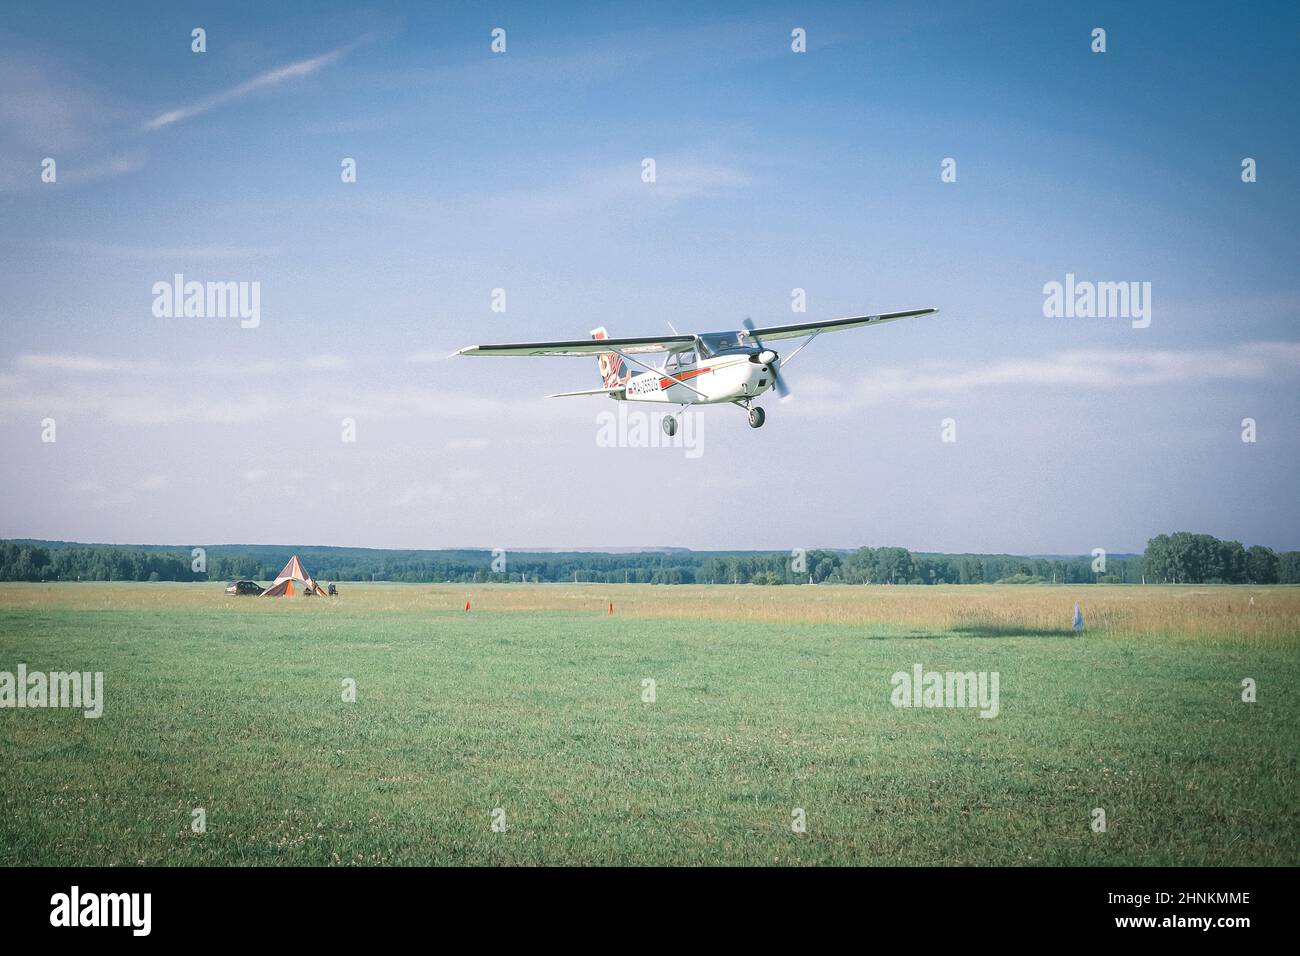 3 luglio 2021, Russia. Kemerovo, un piccolo aereo vola Foto Stock